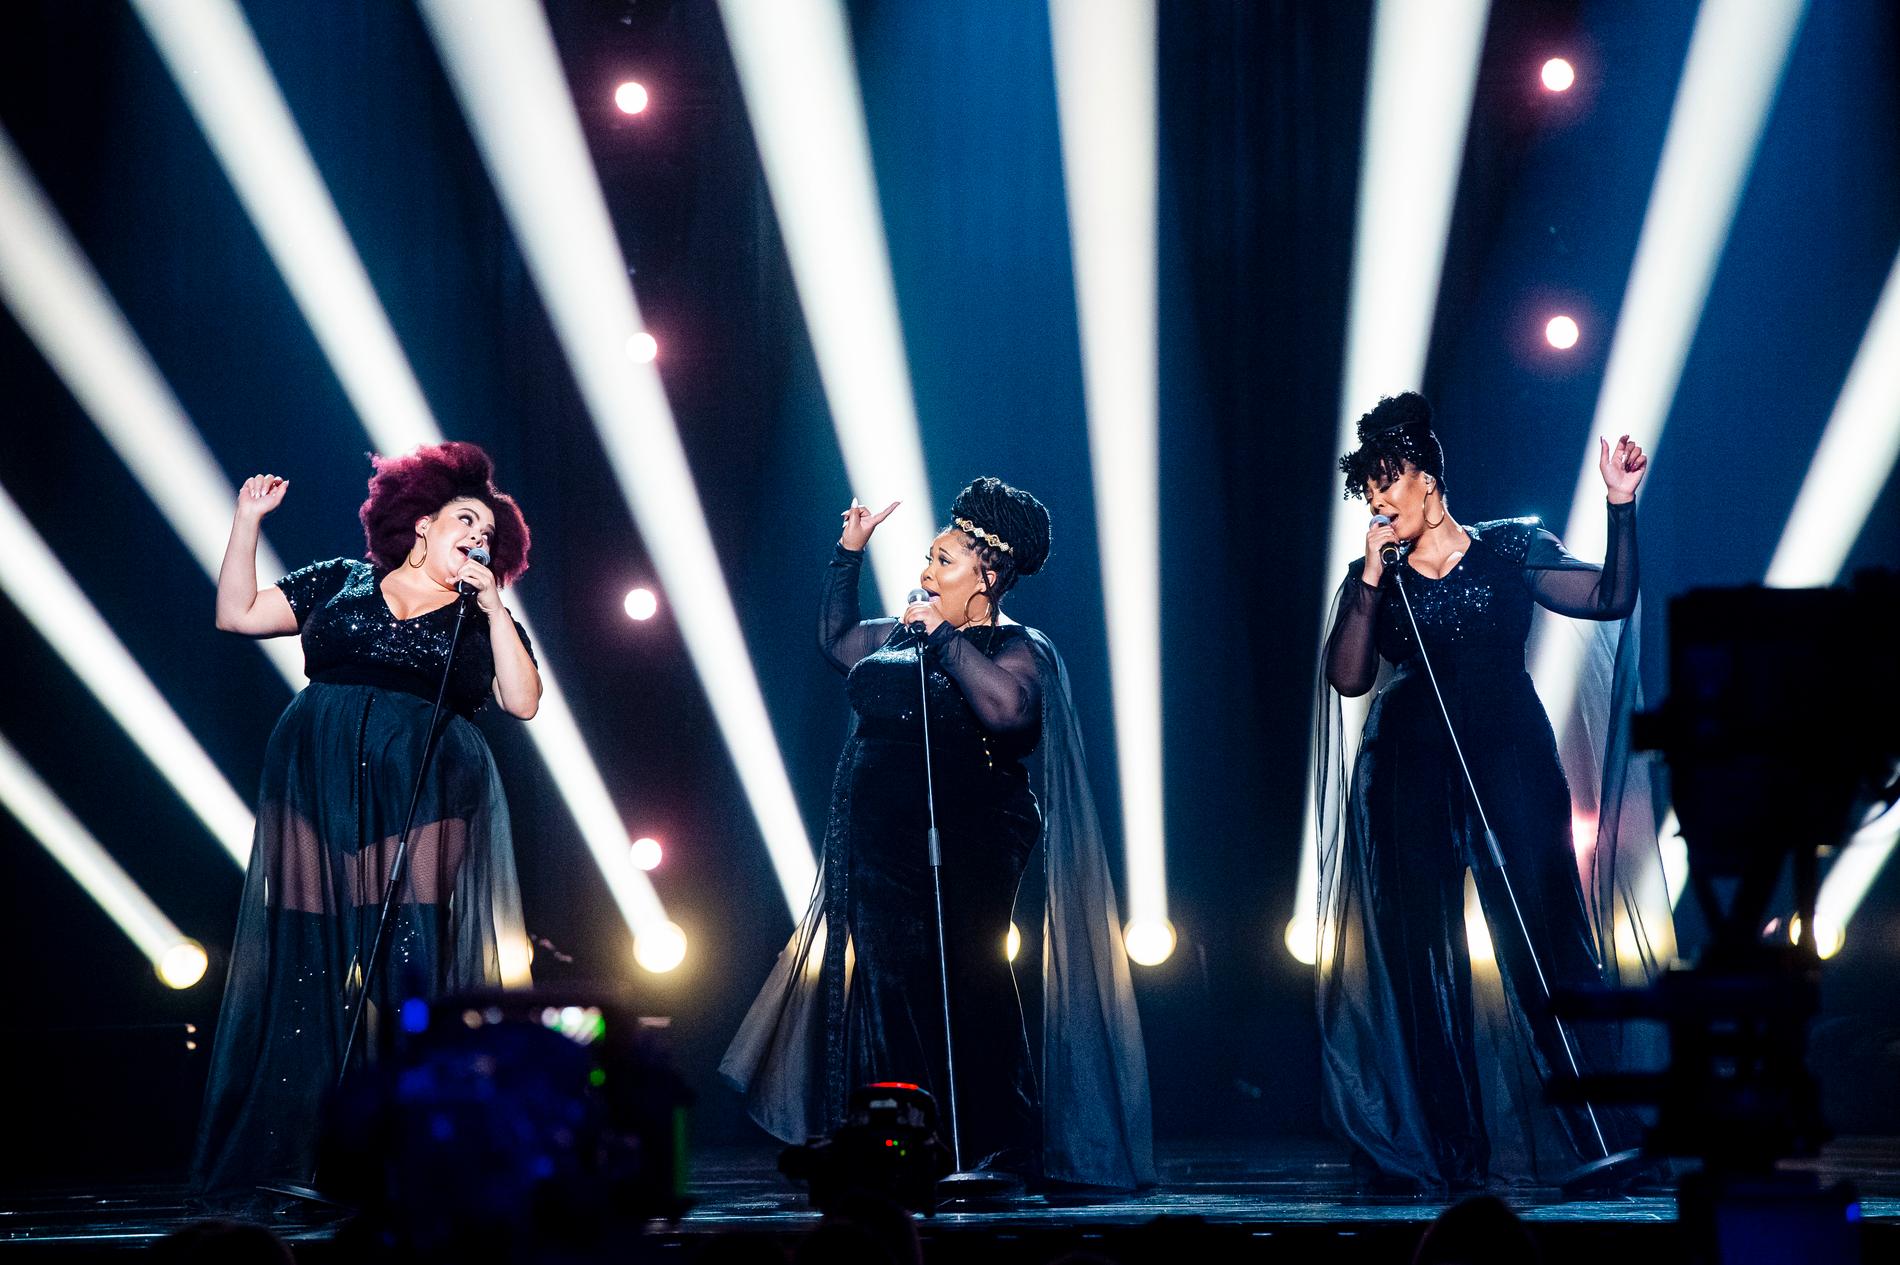 The Mamas på scenen under genrepet inför Melodifestivalen 2020